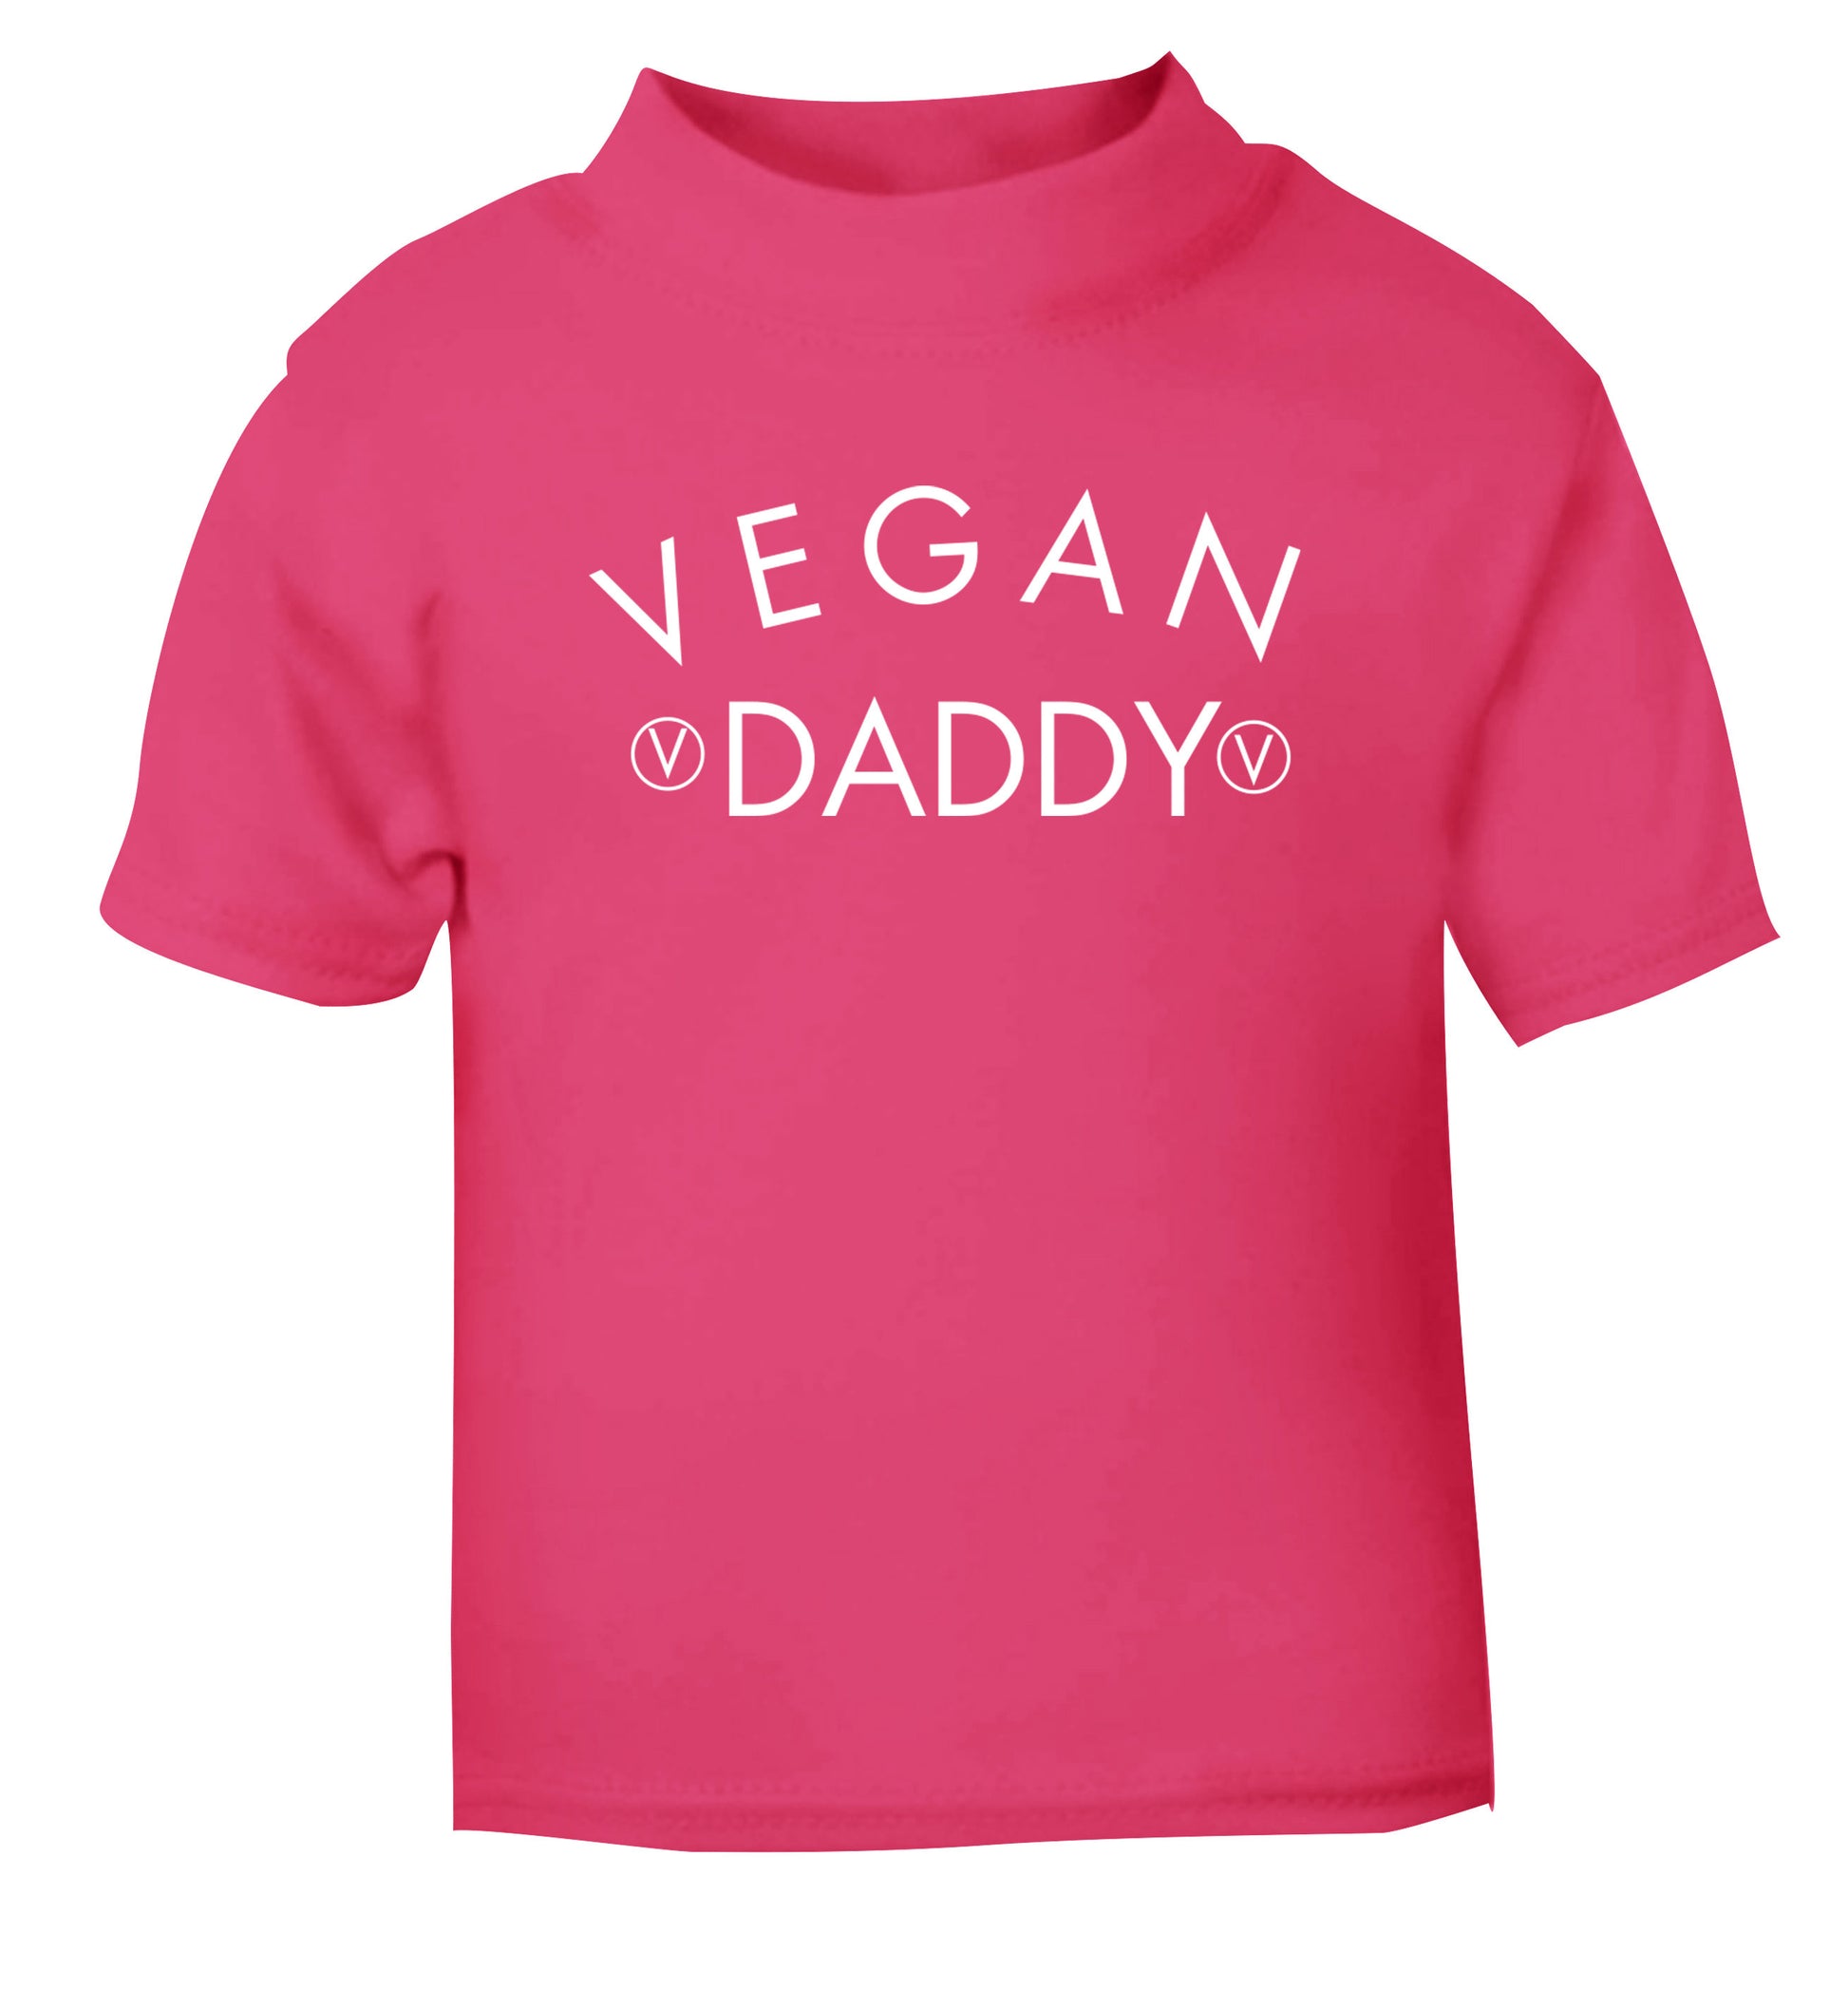 Vegan daddy pink Baby Toddler Tshirt 2 Years